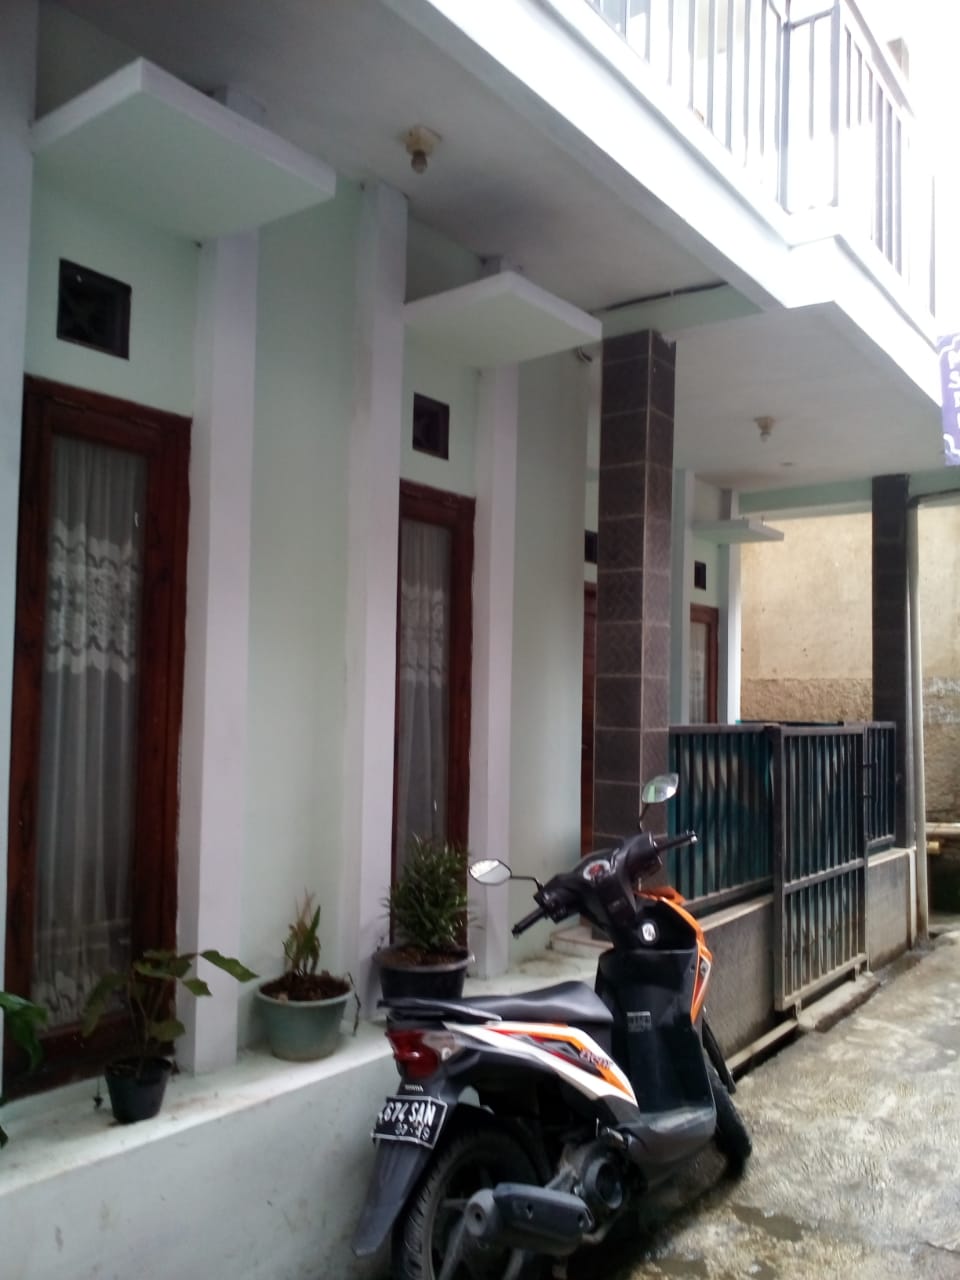 Dijual Rumah Masuk Gang Murah Minimalis Nyaman Di Cihanjuang Cimahi Bandung 270 Juta Hubungi Ida Royani